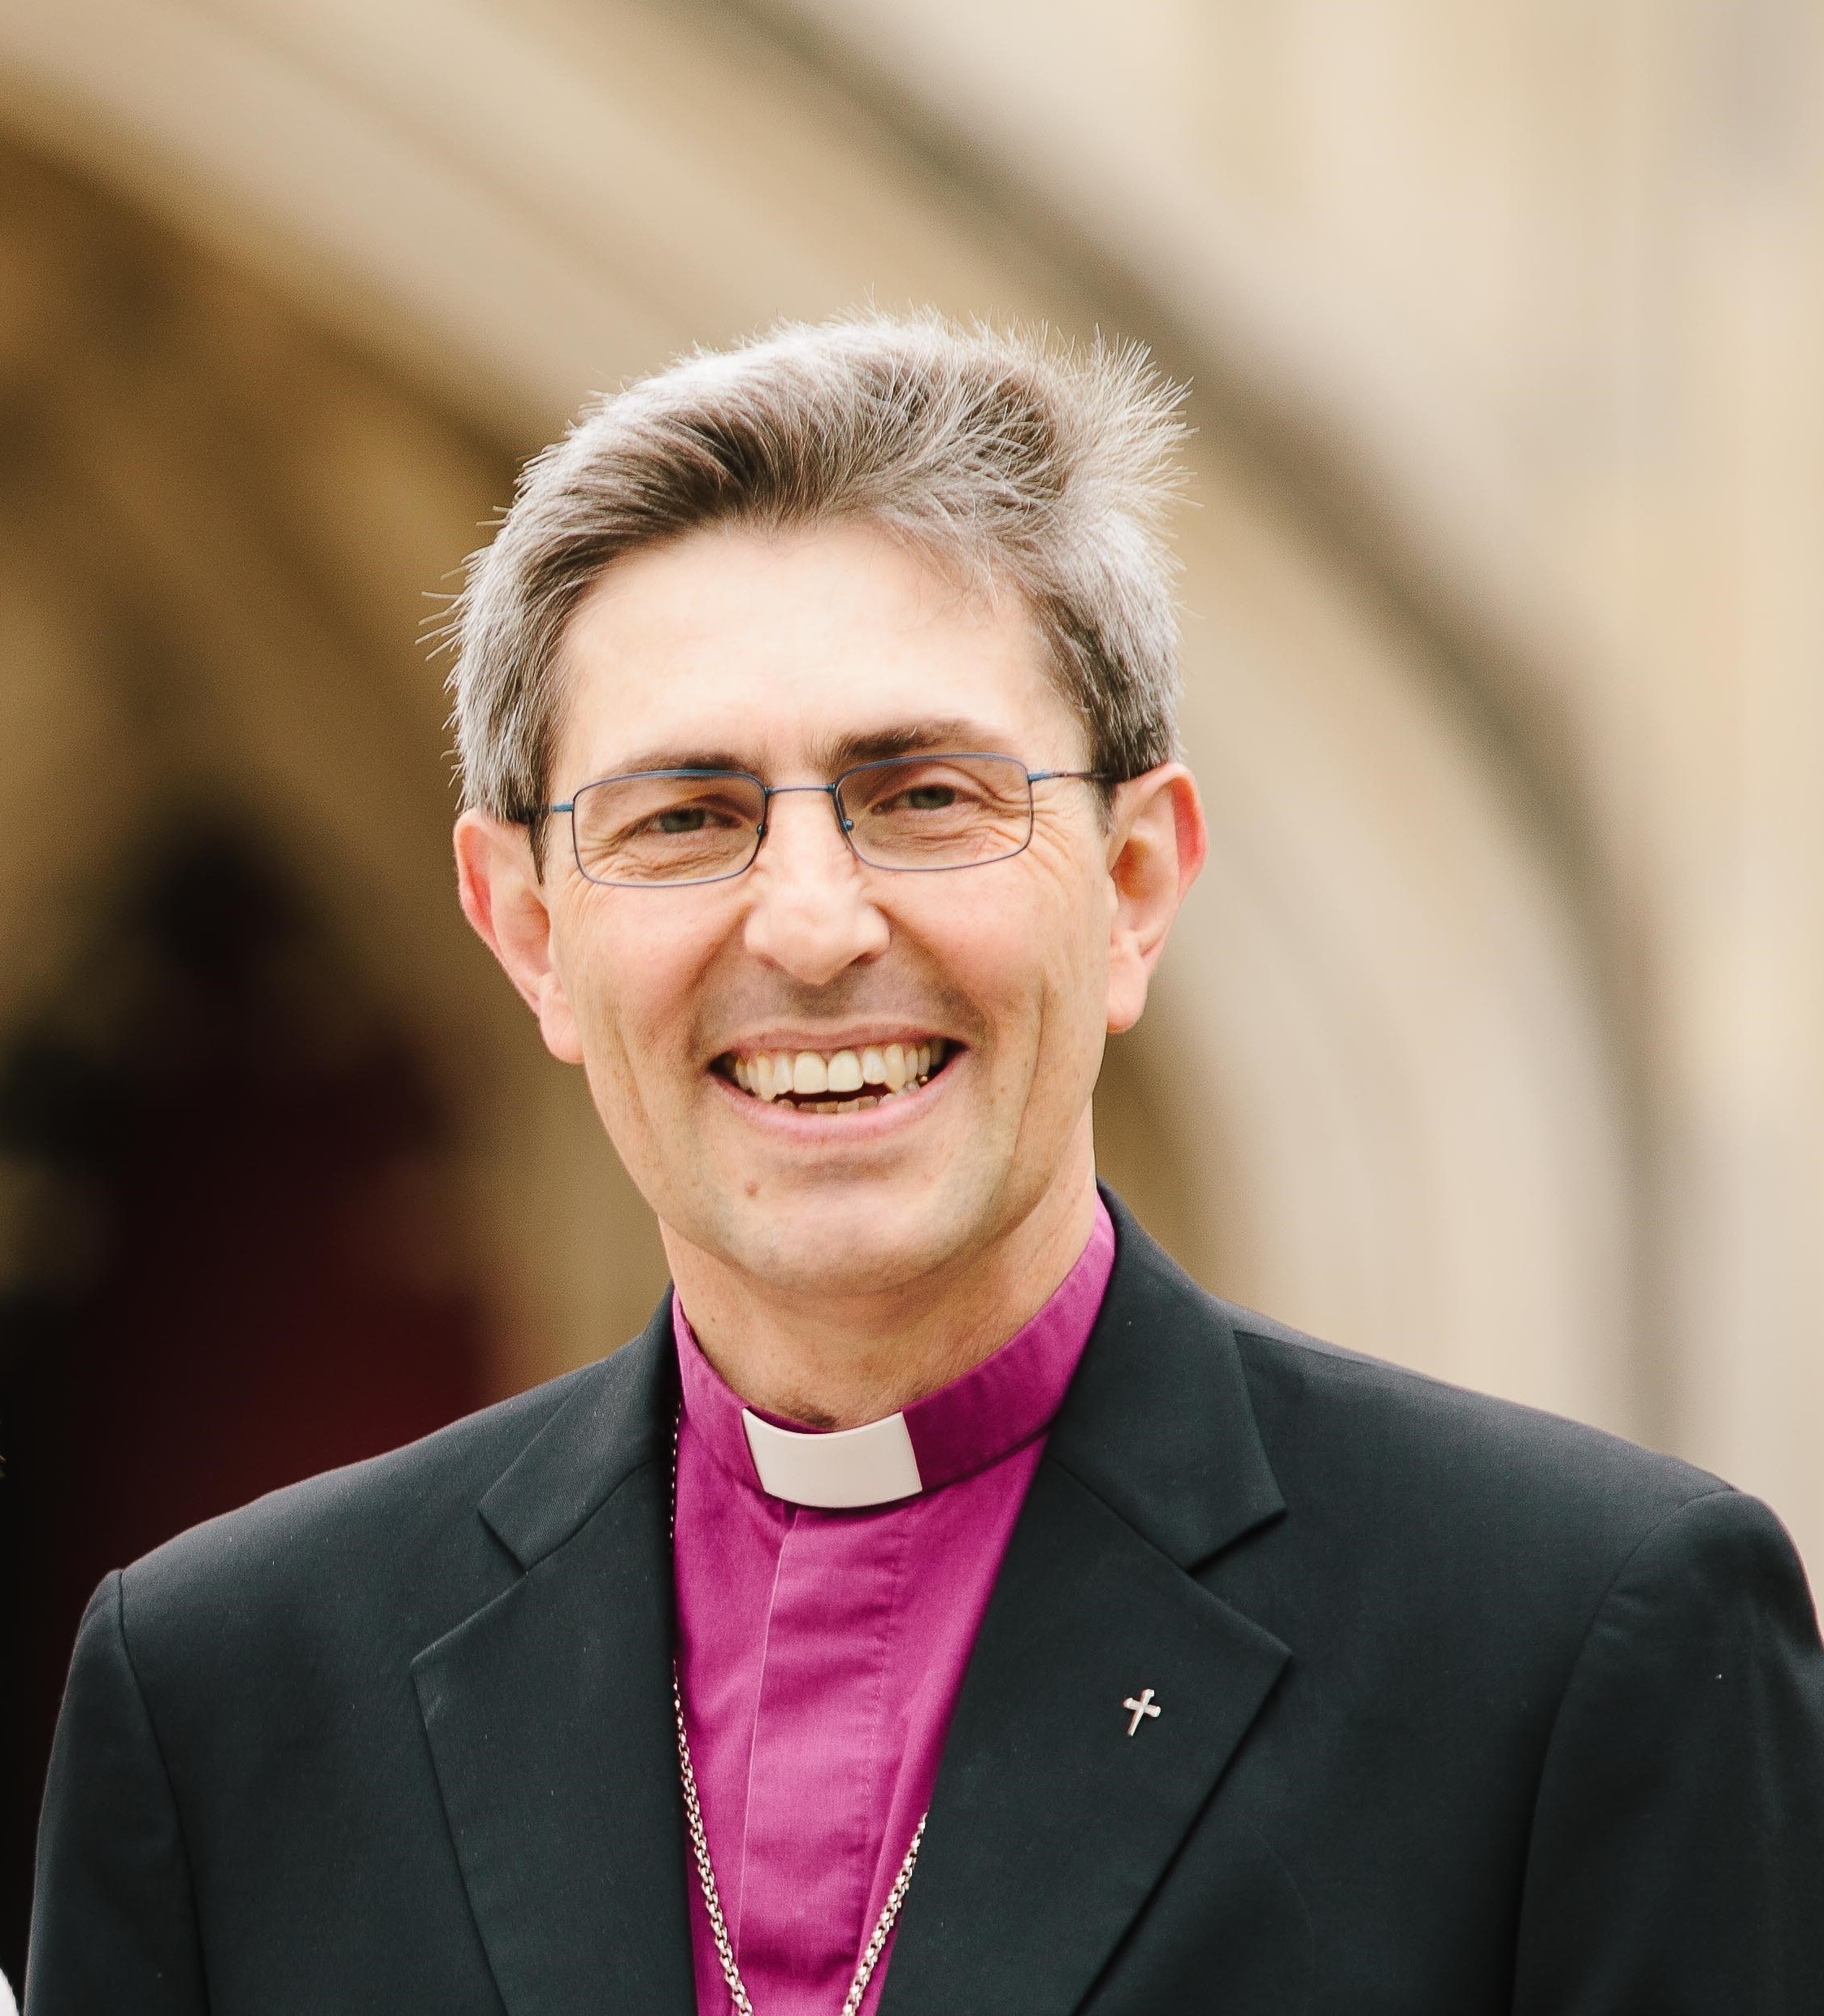 The Rt Rev Tim Dakin, Bishop of Winchester